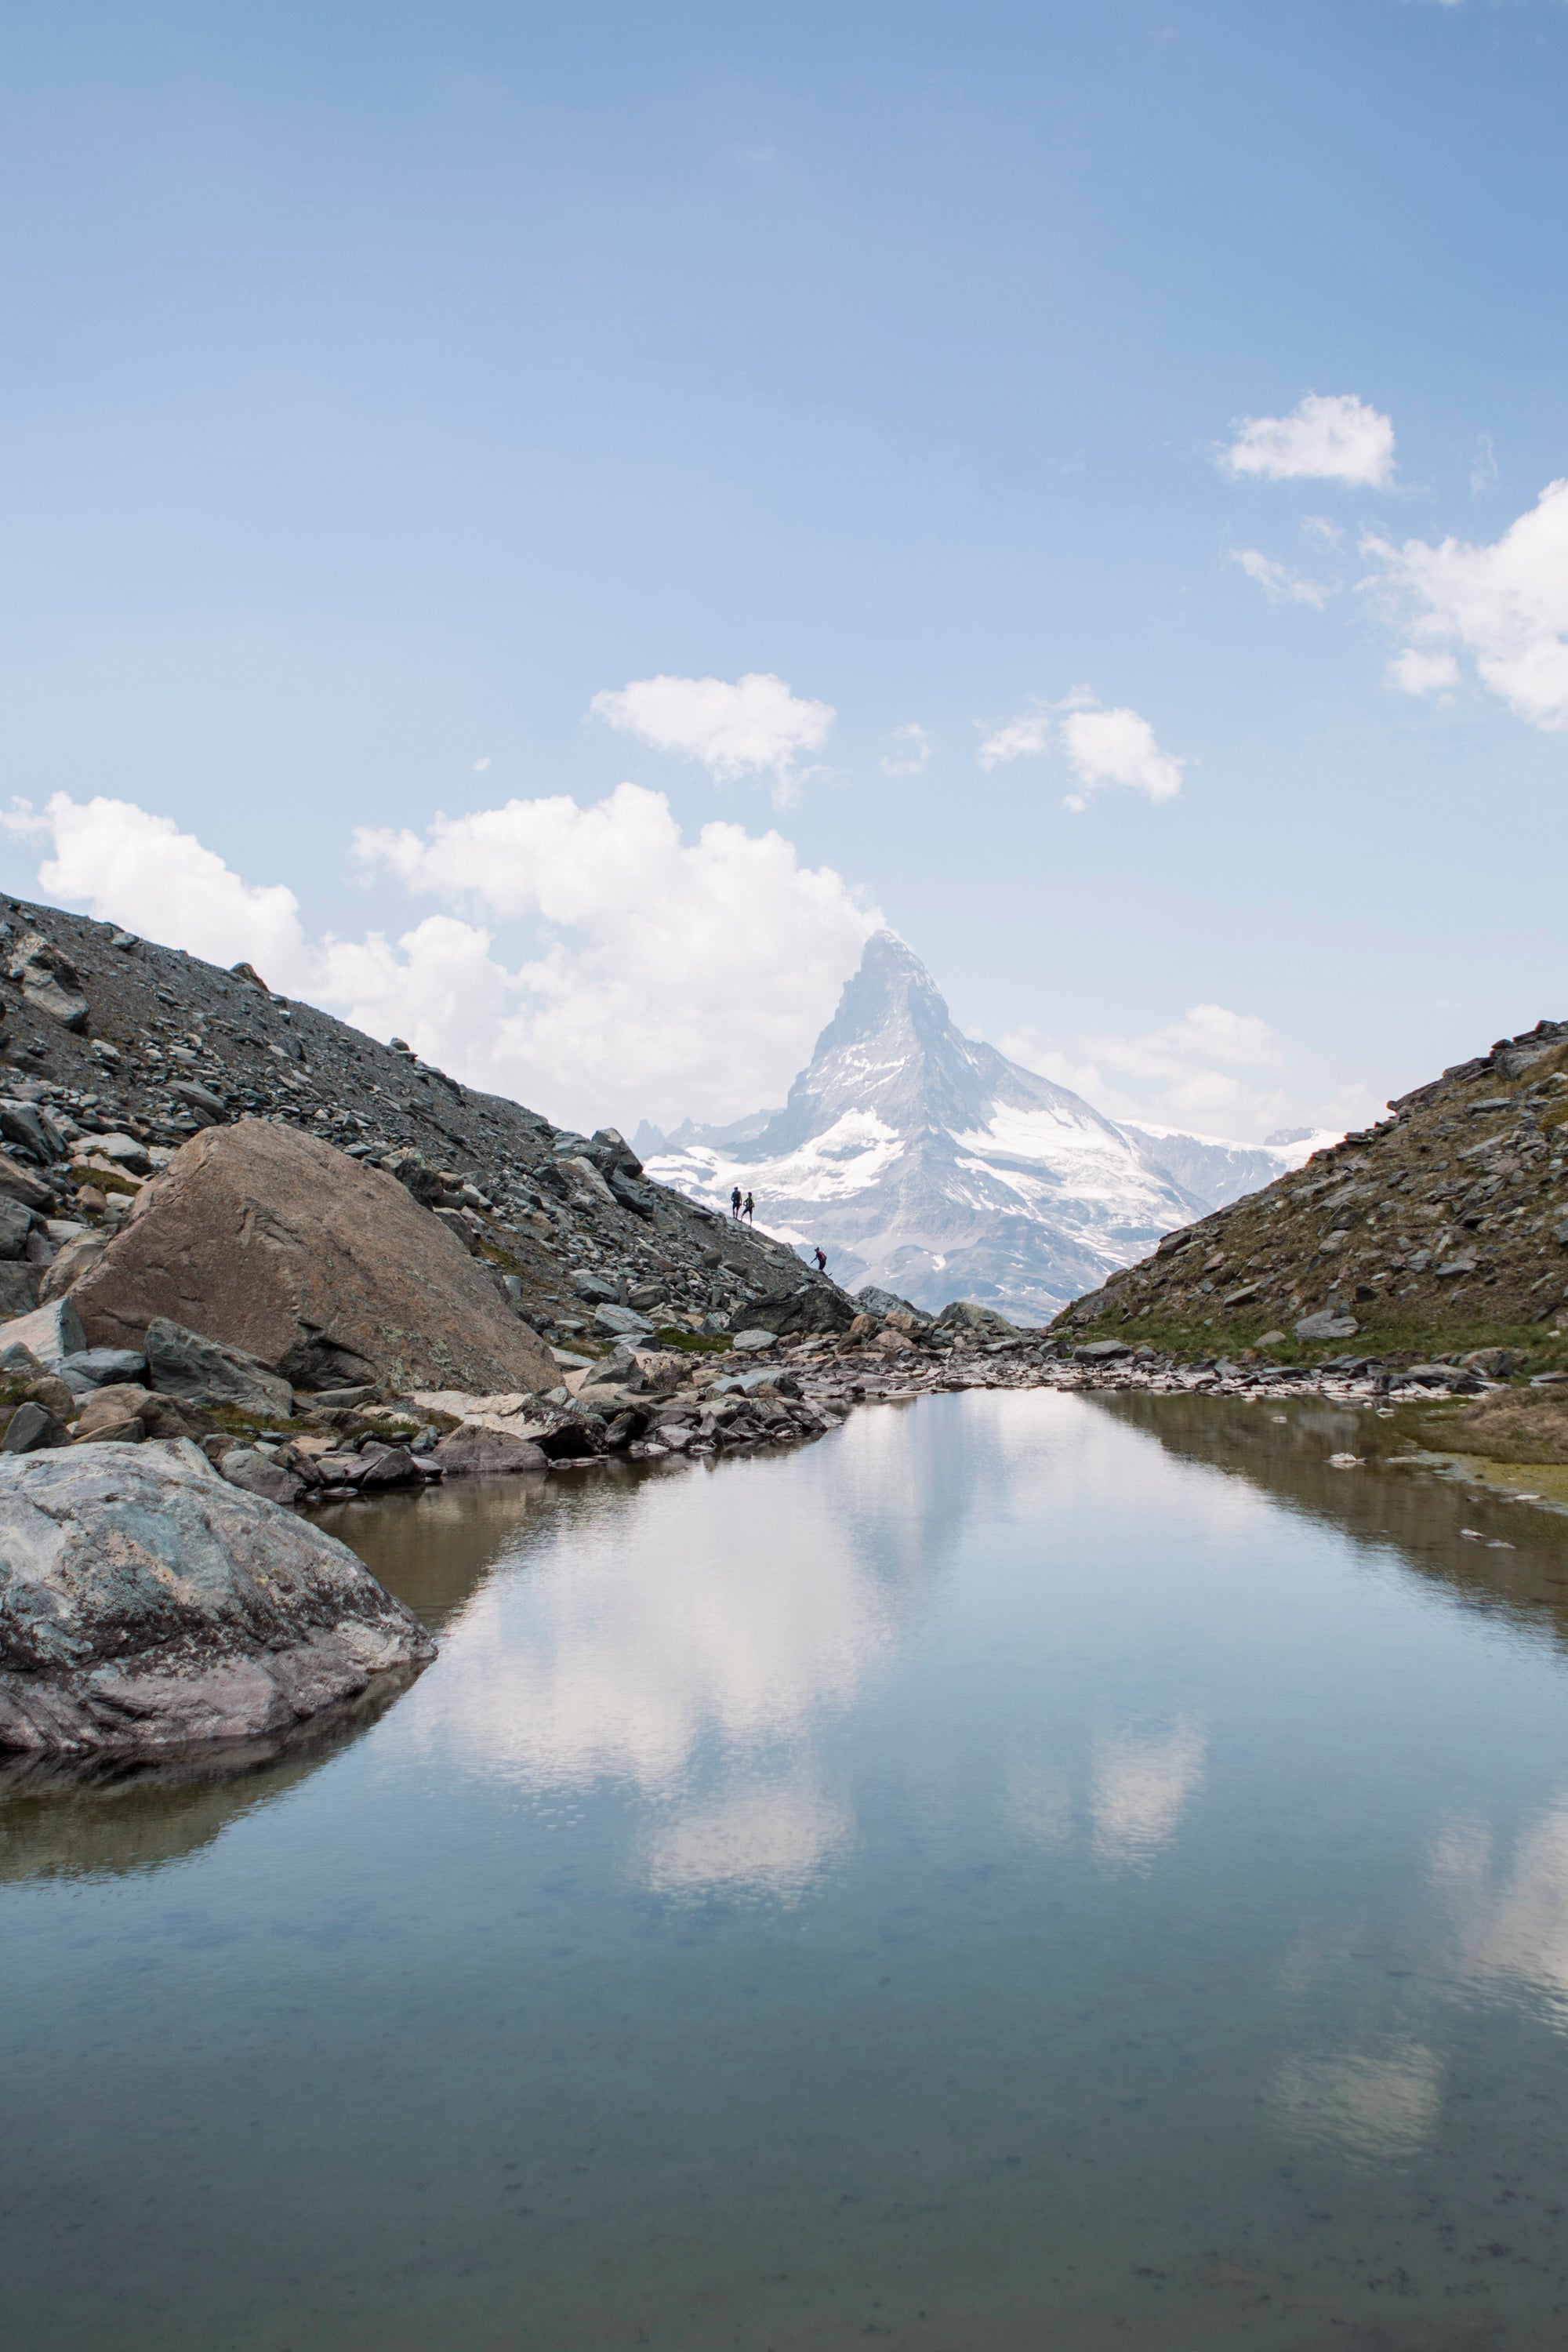 Reise zum Matterhorn – Zermatt